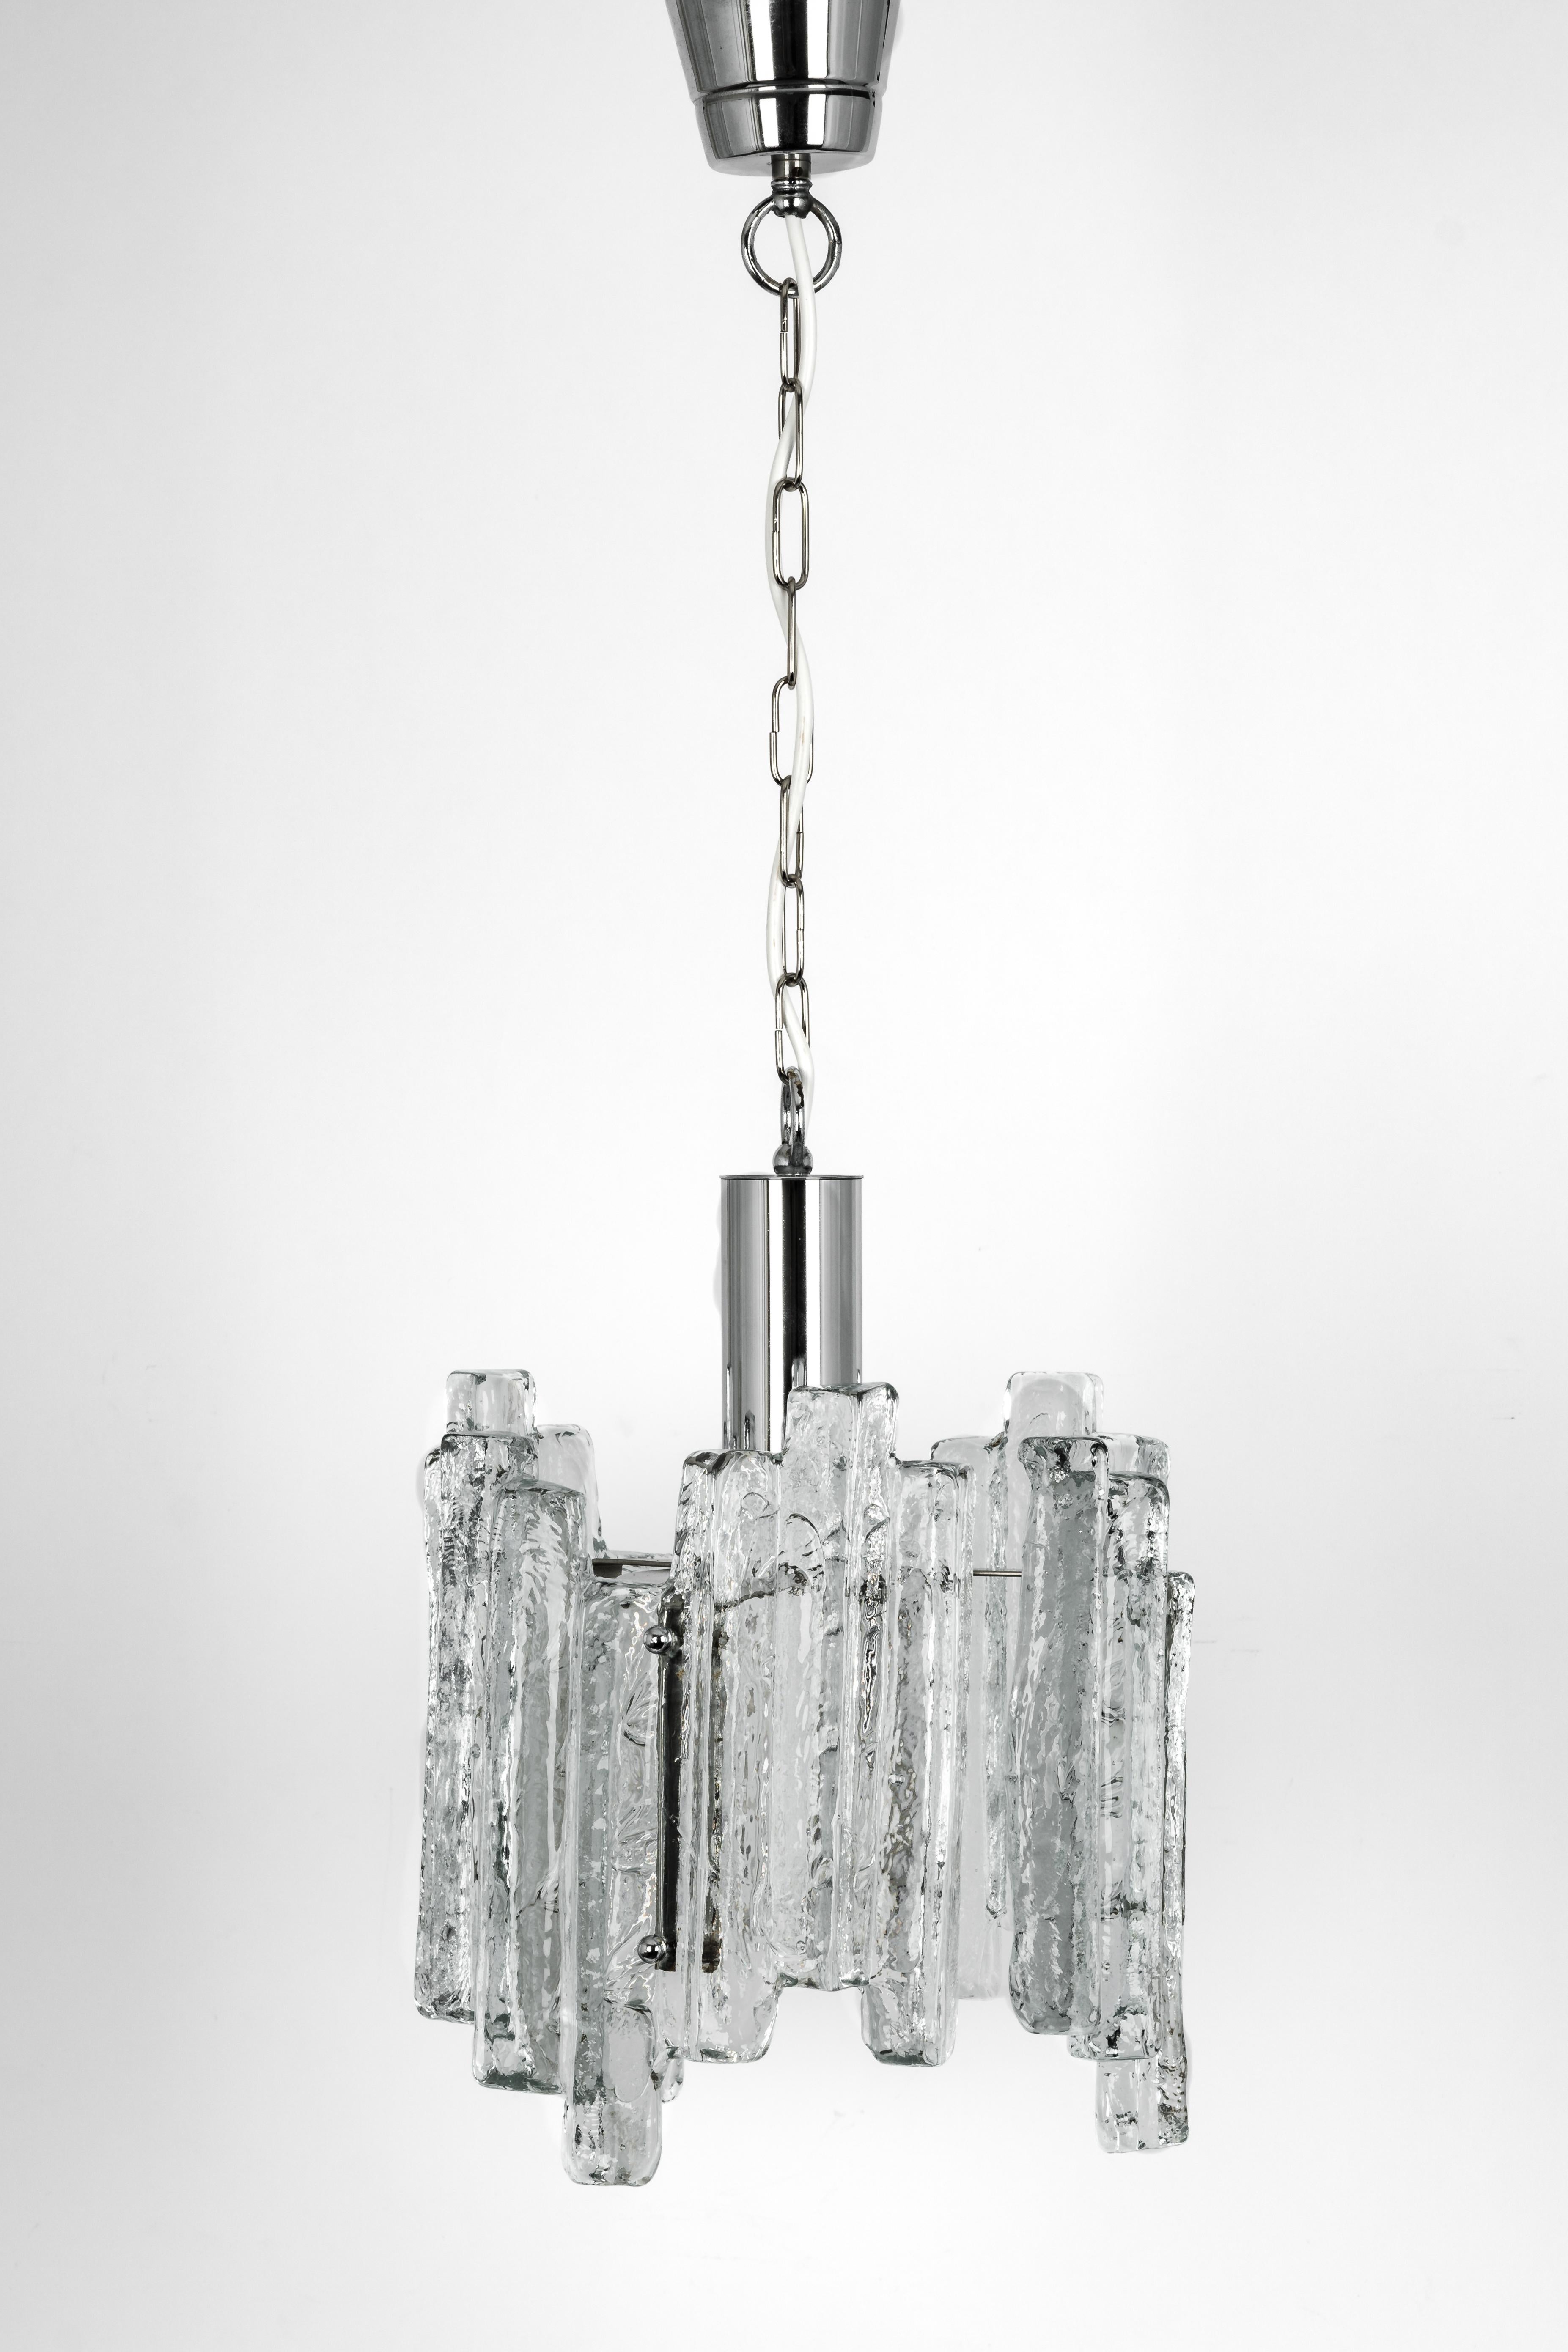 Petit pendentif étonnant en verre de Murano, Allemagne, 1970
3 verres structurés, qui réfractent magnifiquement la lumière.
De haute qualité et en très bon état. Nettoyé, bien câblé et prêt à être utilisé.
Le luminaire nécessite 1 ampoule E27